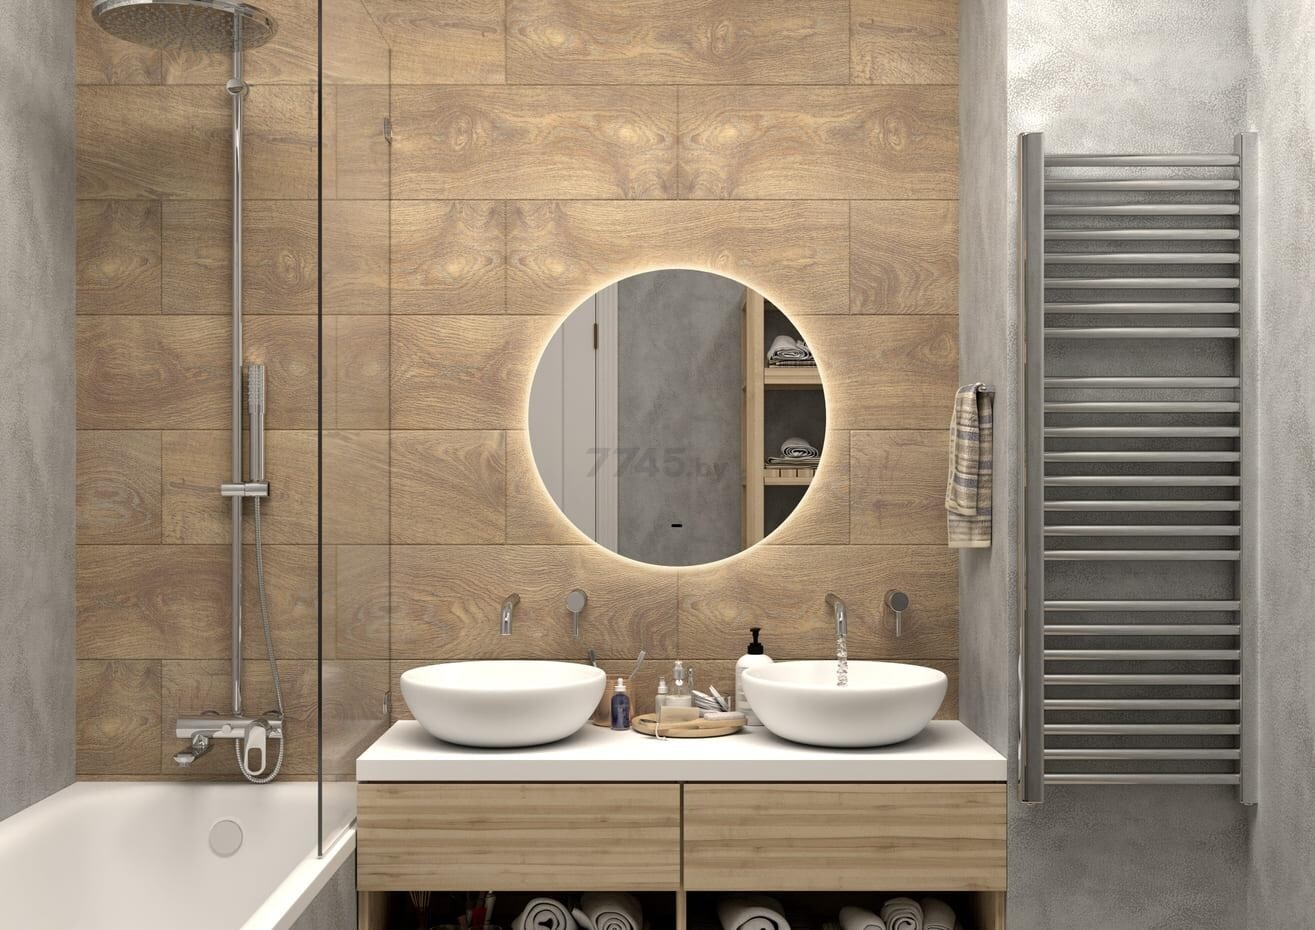 Зеркало для ванной с подсветкой КОНТИНЕНТ Ajour LED D550 ореольная теплая/холодная подсветка (ЗЛП2890) - Фото 9